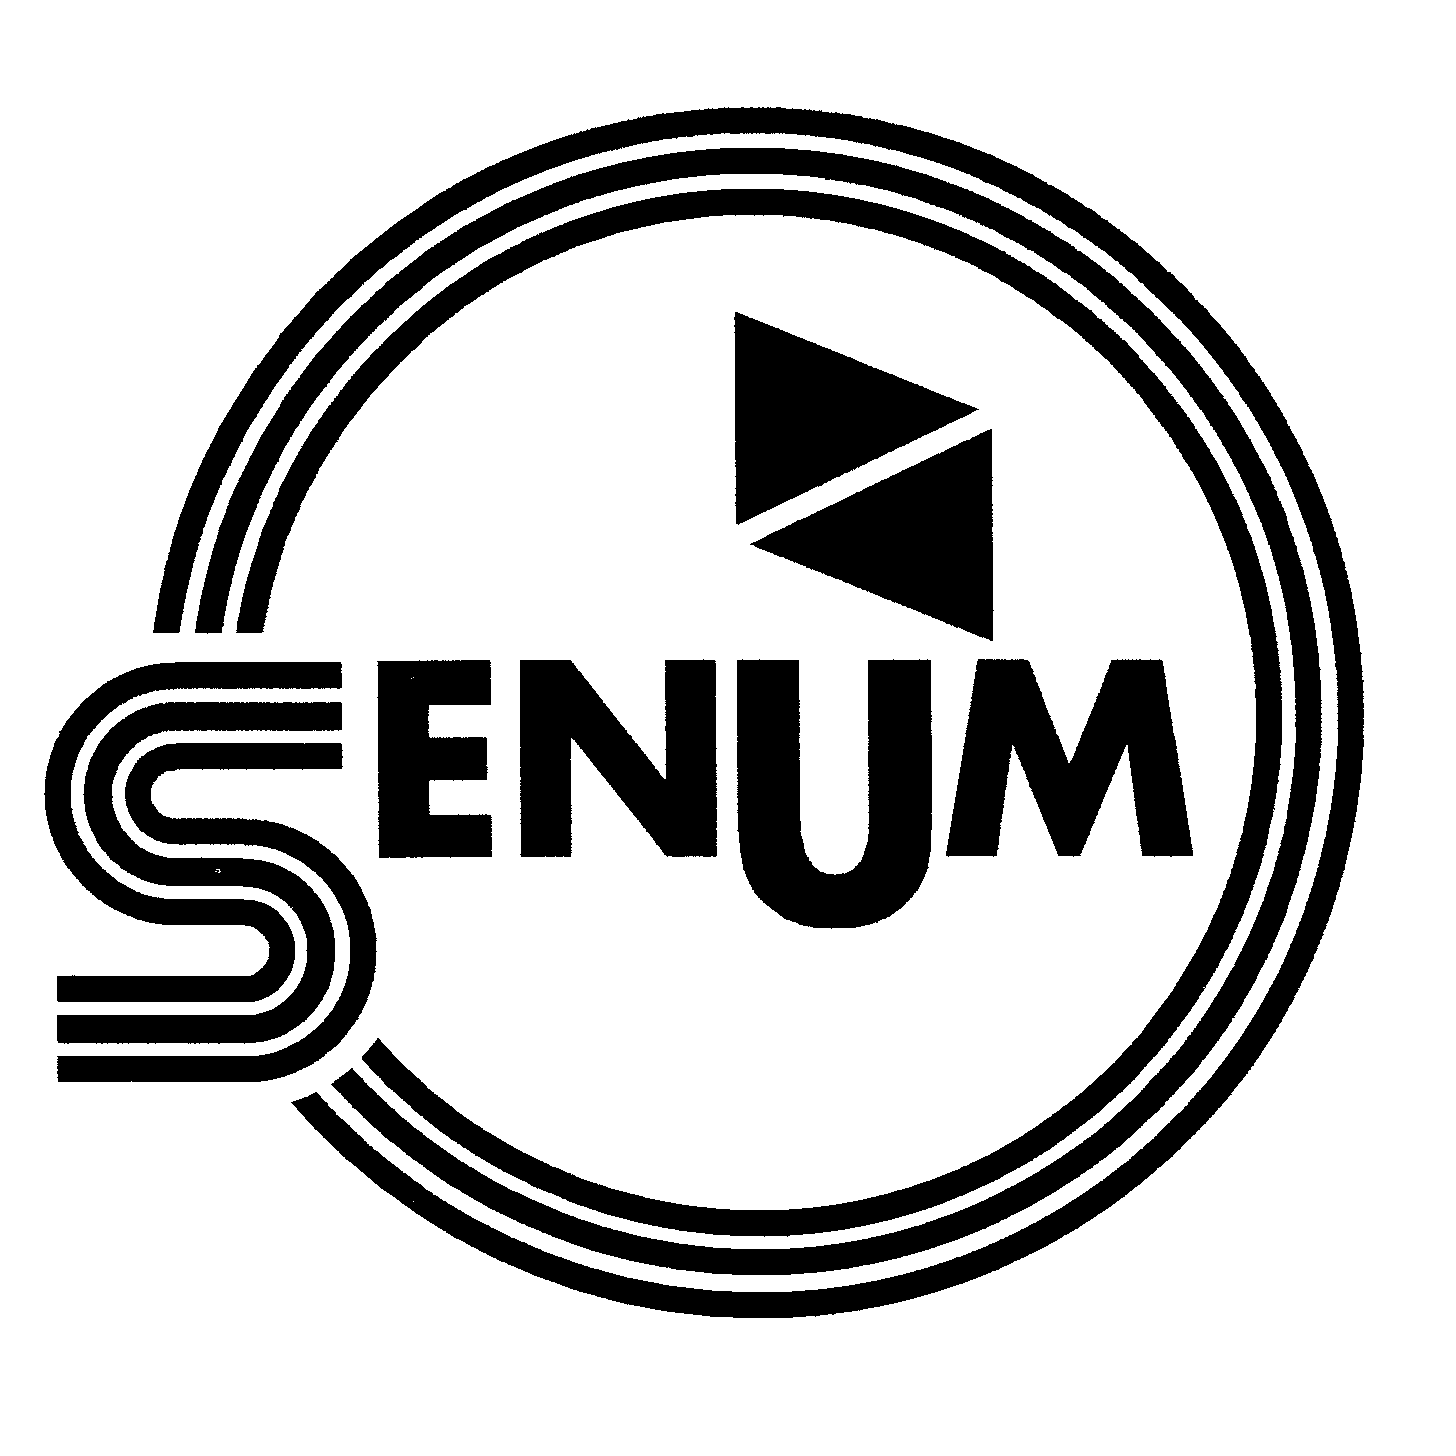 SenUM logo